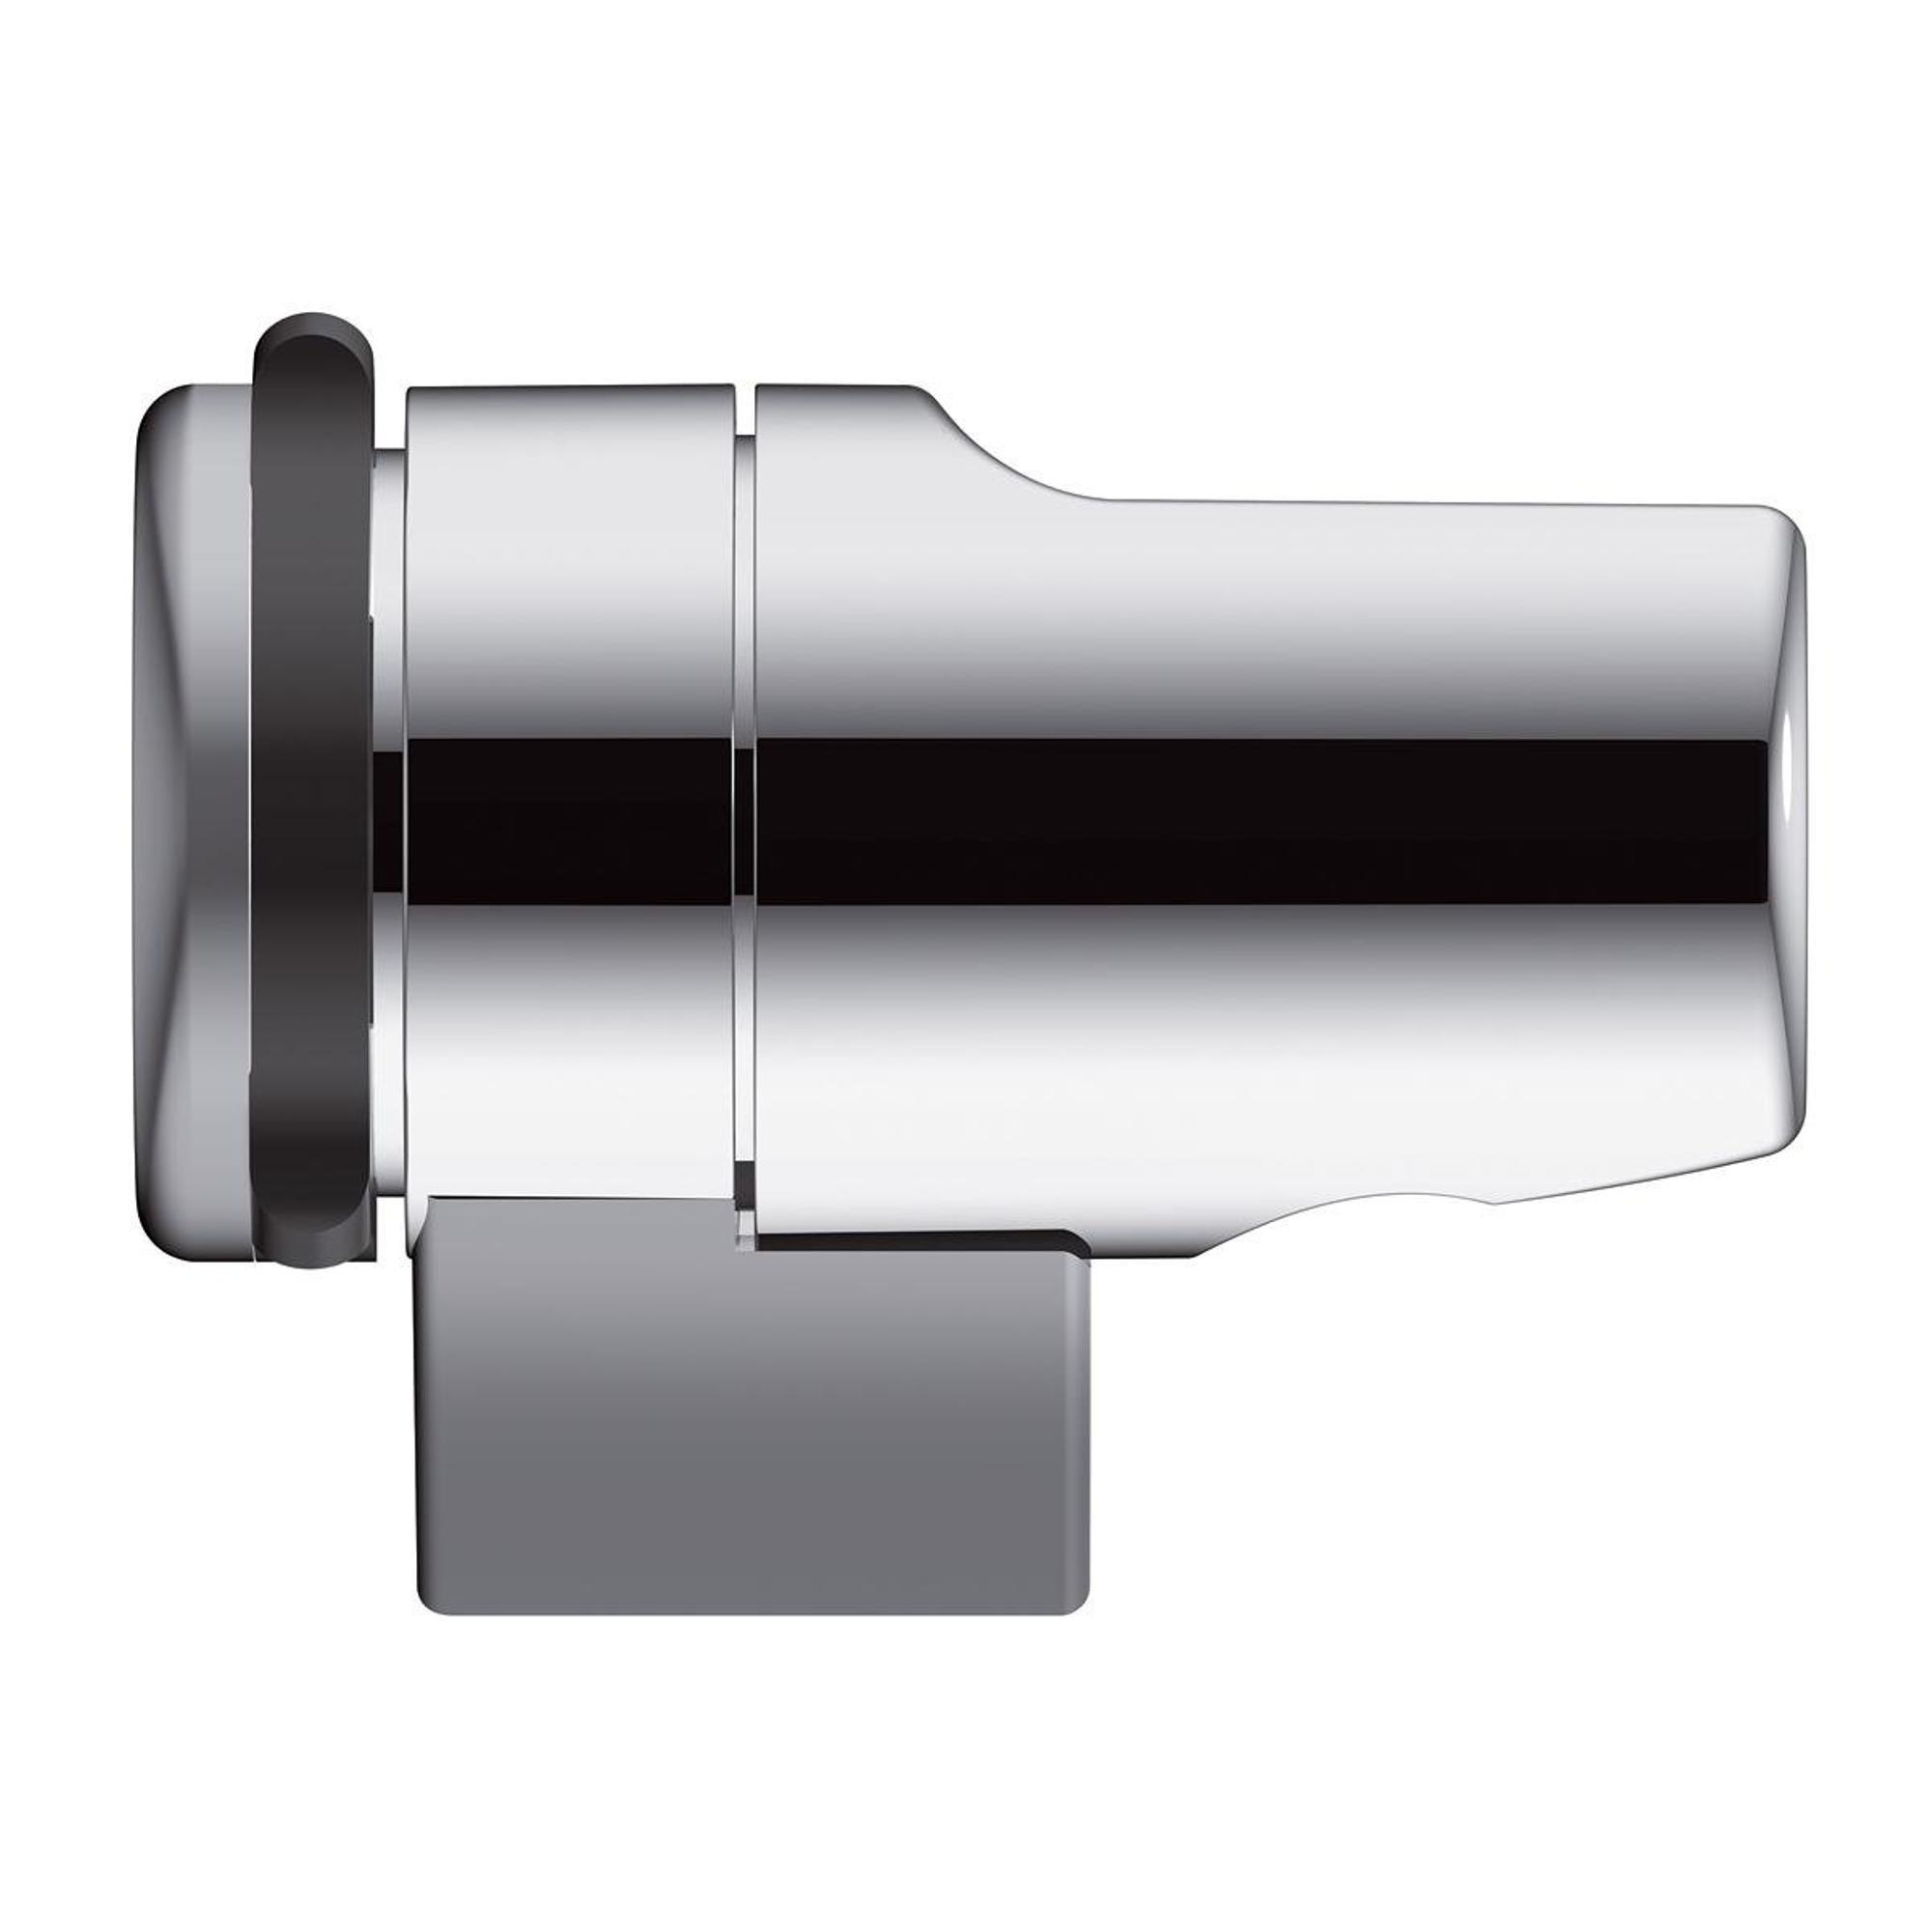 Raminex Tuka tuka ensemble WC/douche avec douchette à main avec  interrupteur marche/arrêt 1/2 avec flexible de douche 100cm + support mural  avec robinet intégré chrome - AC67551 